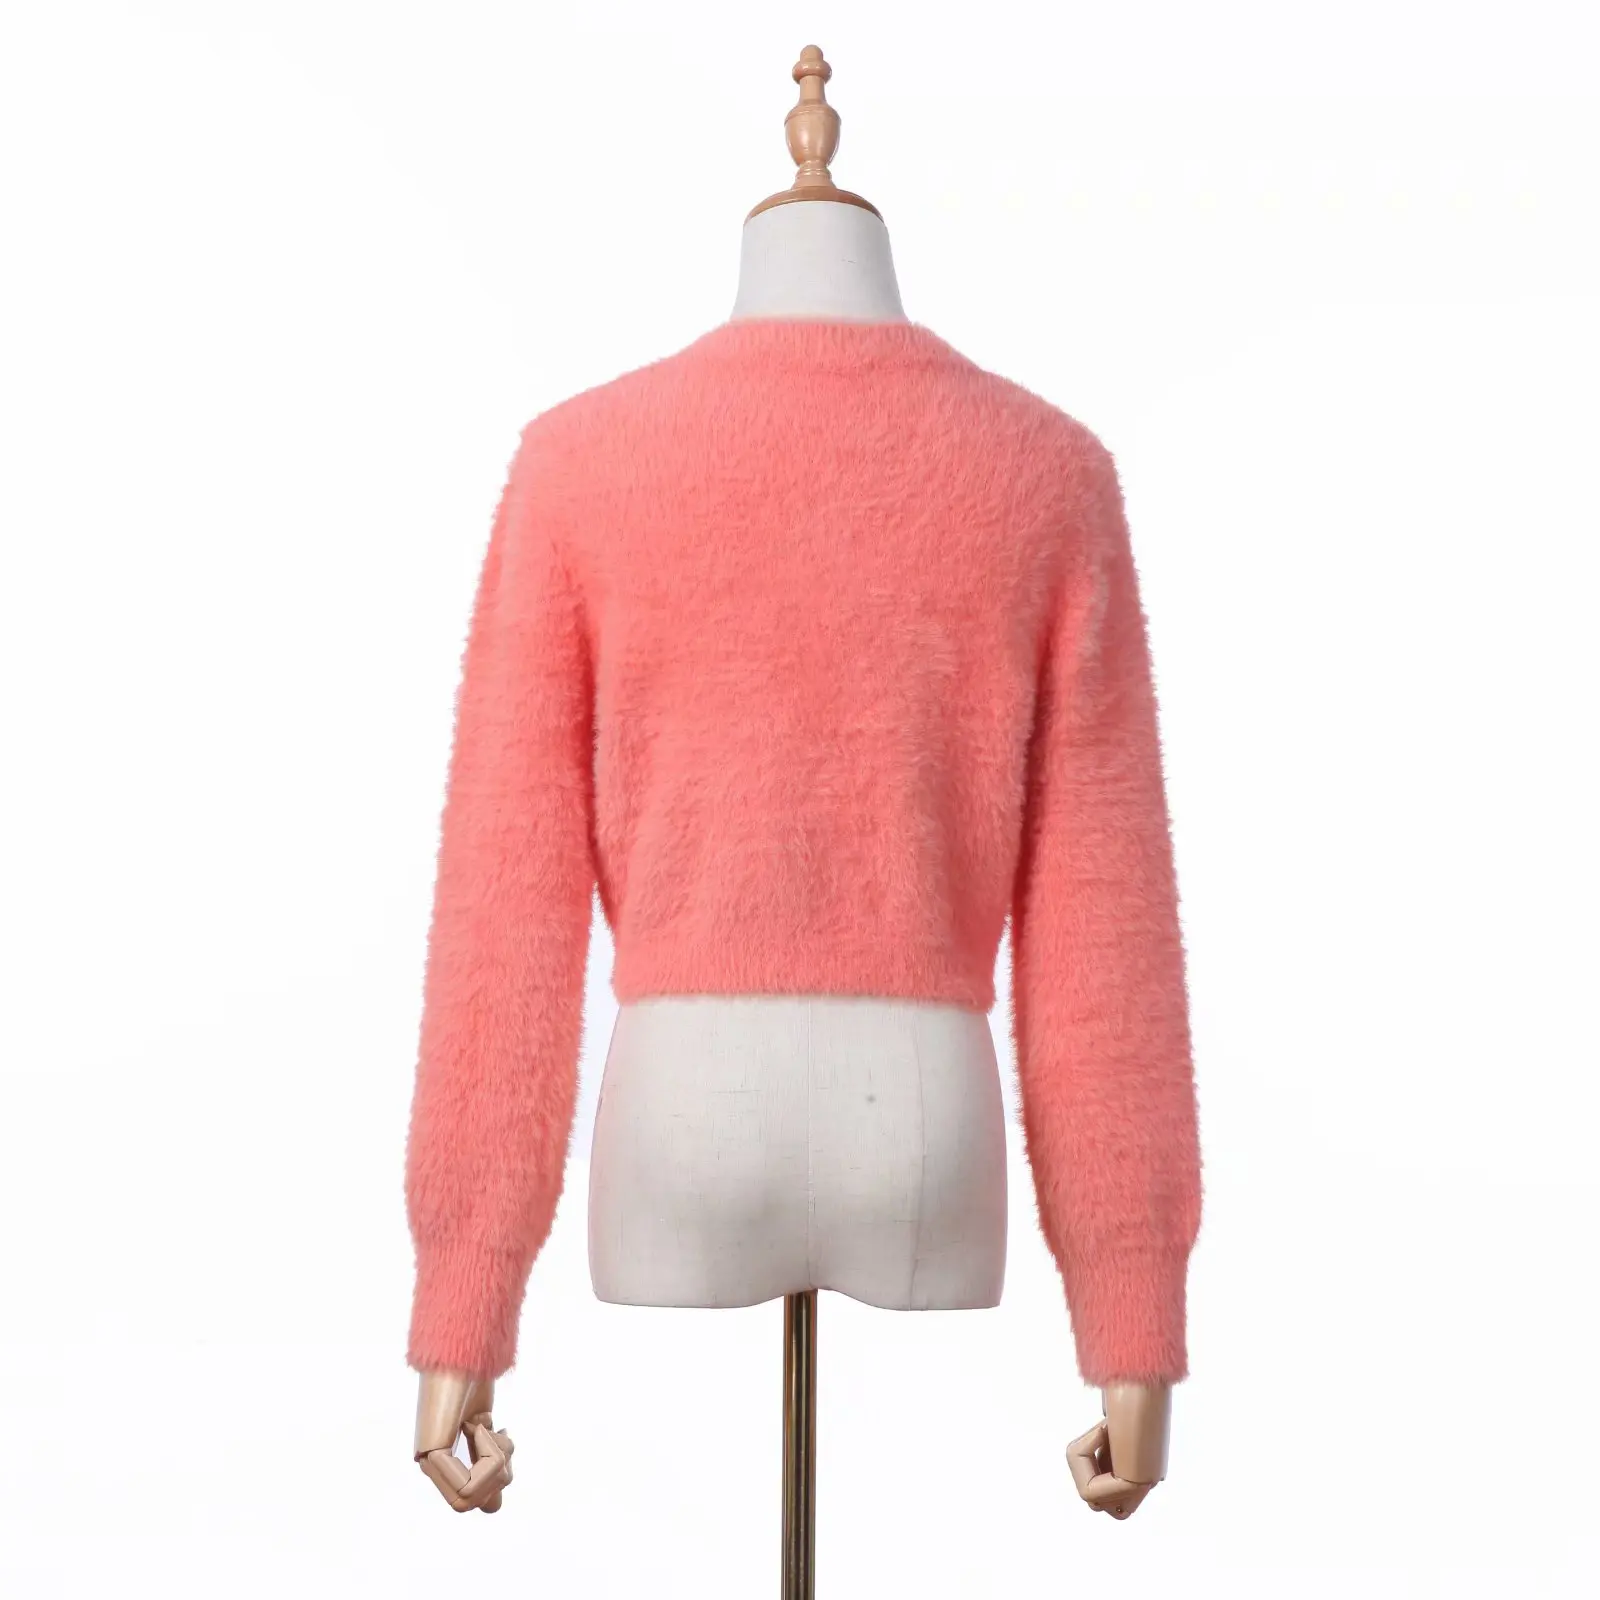 Осенние свитера из мохера, корейский укороченный свитер, вязаный Укороченный кардиган, открытый вязаный свитер на пуговицах, розовый винтажный сексуальный кардиган для женщин